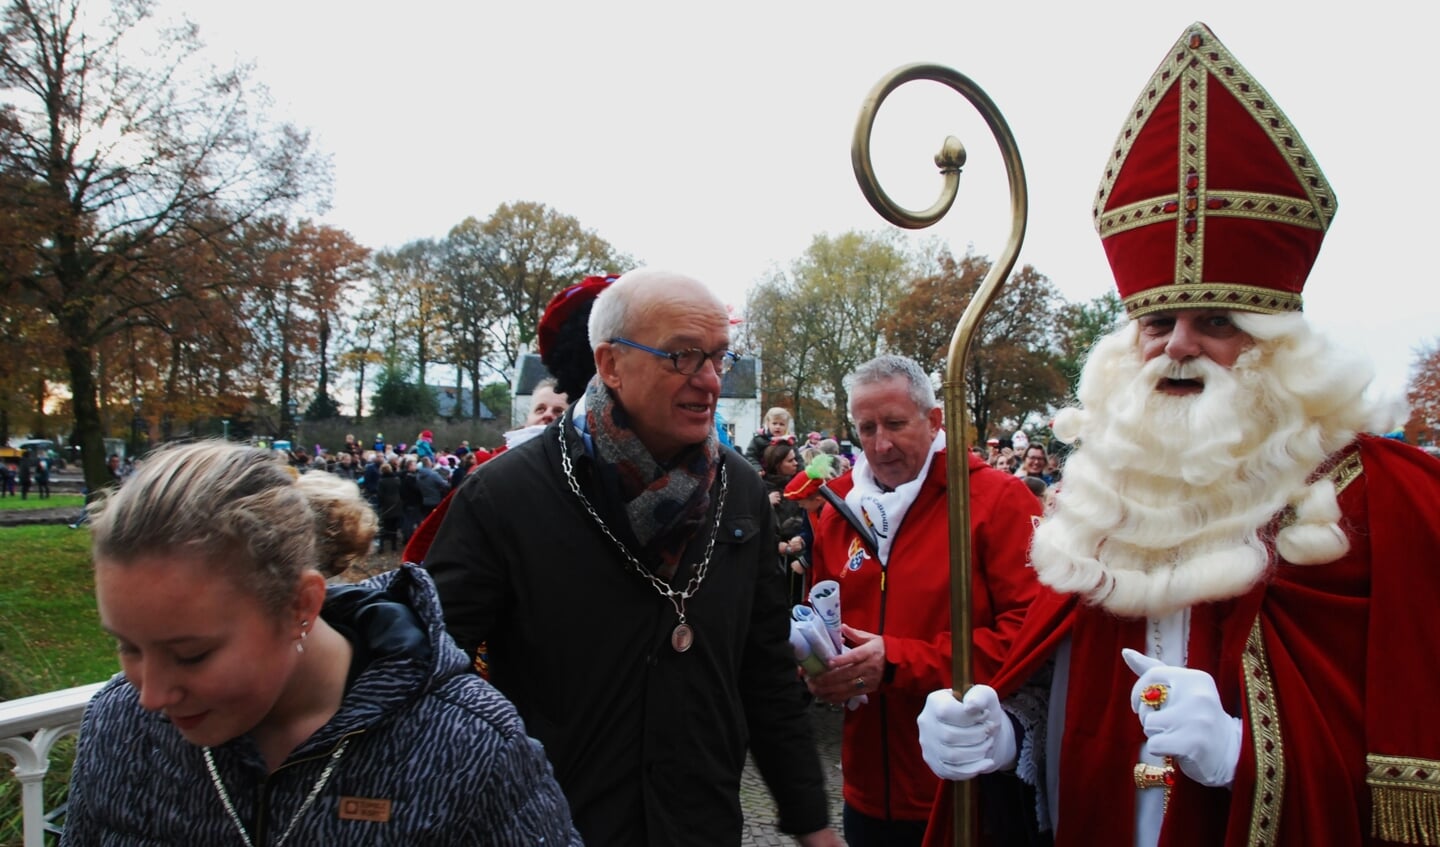 Burgemeester Harry de Vries en de kinderburgemeester verwelkomen de Sint.